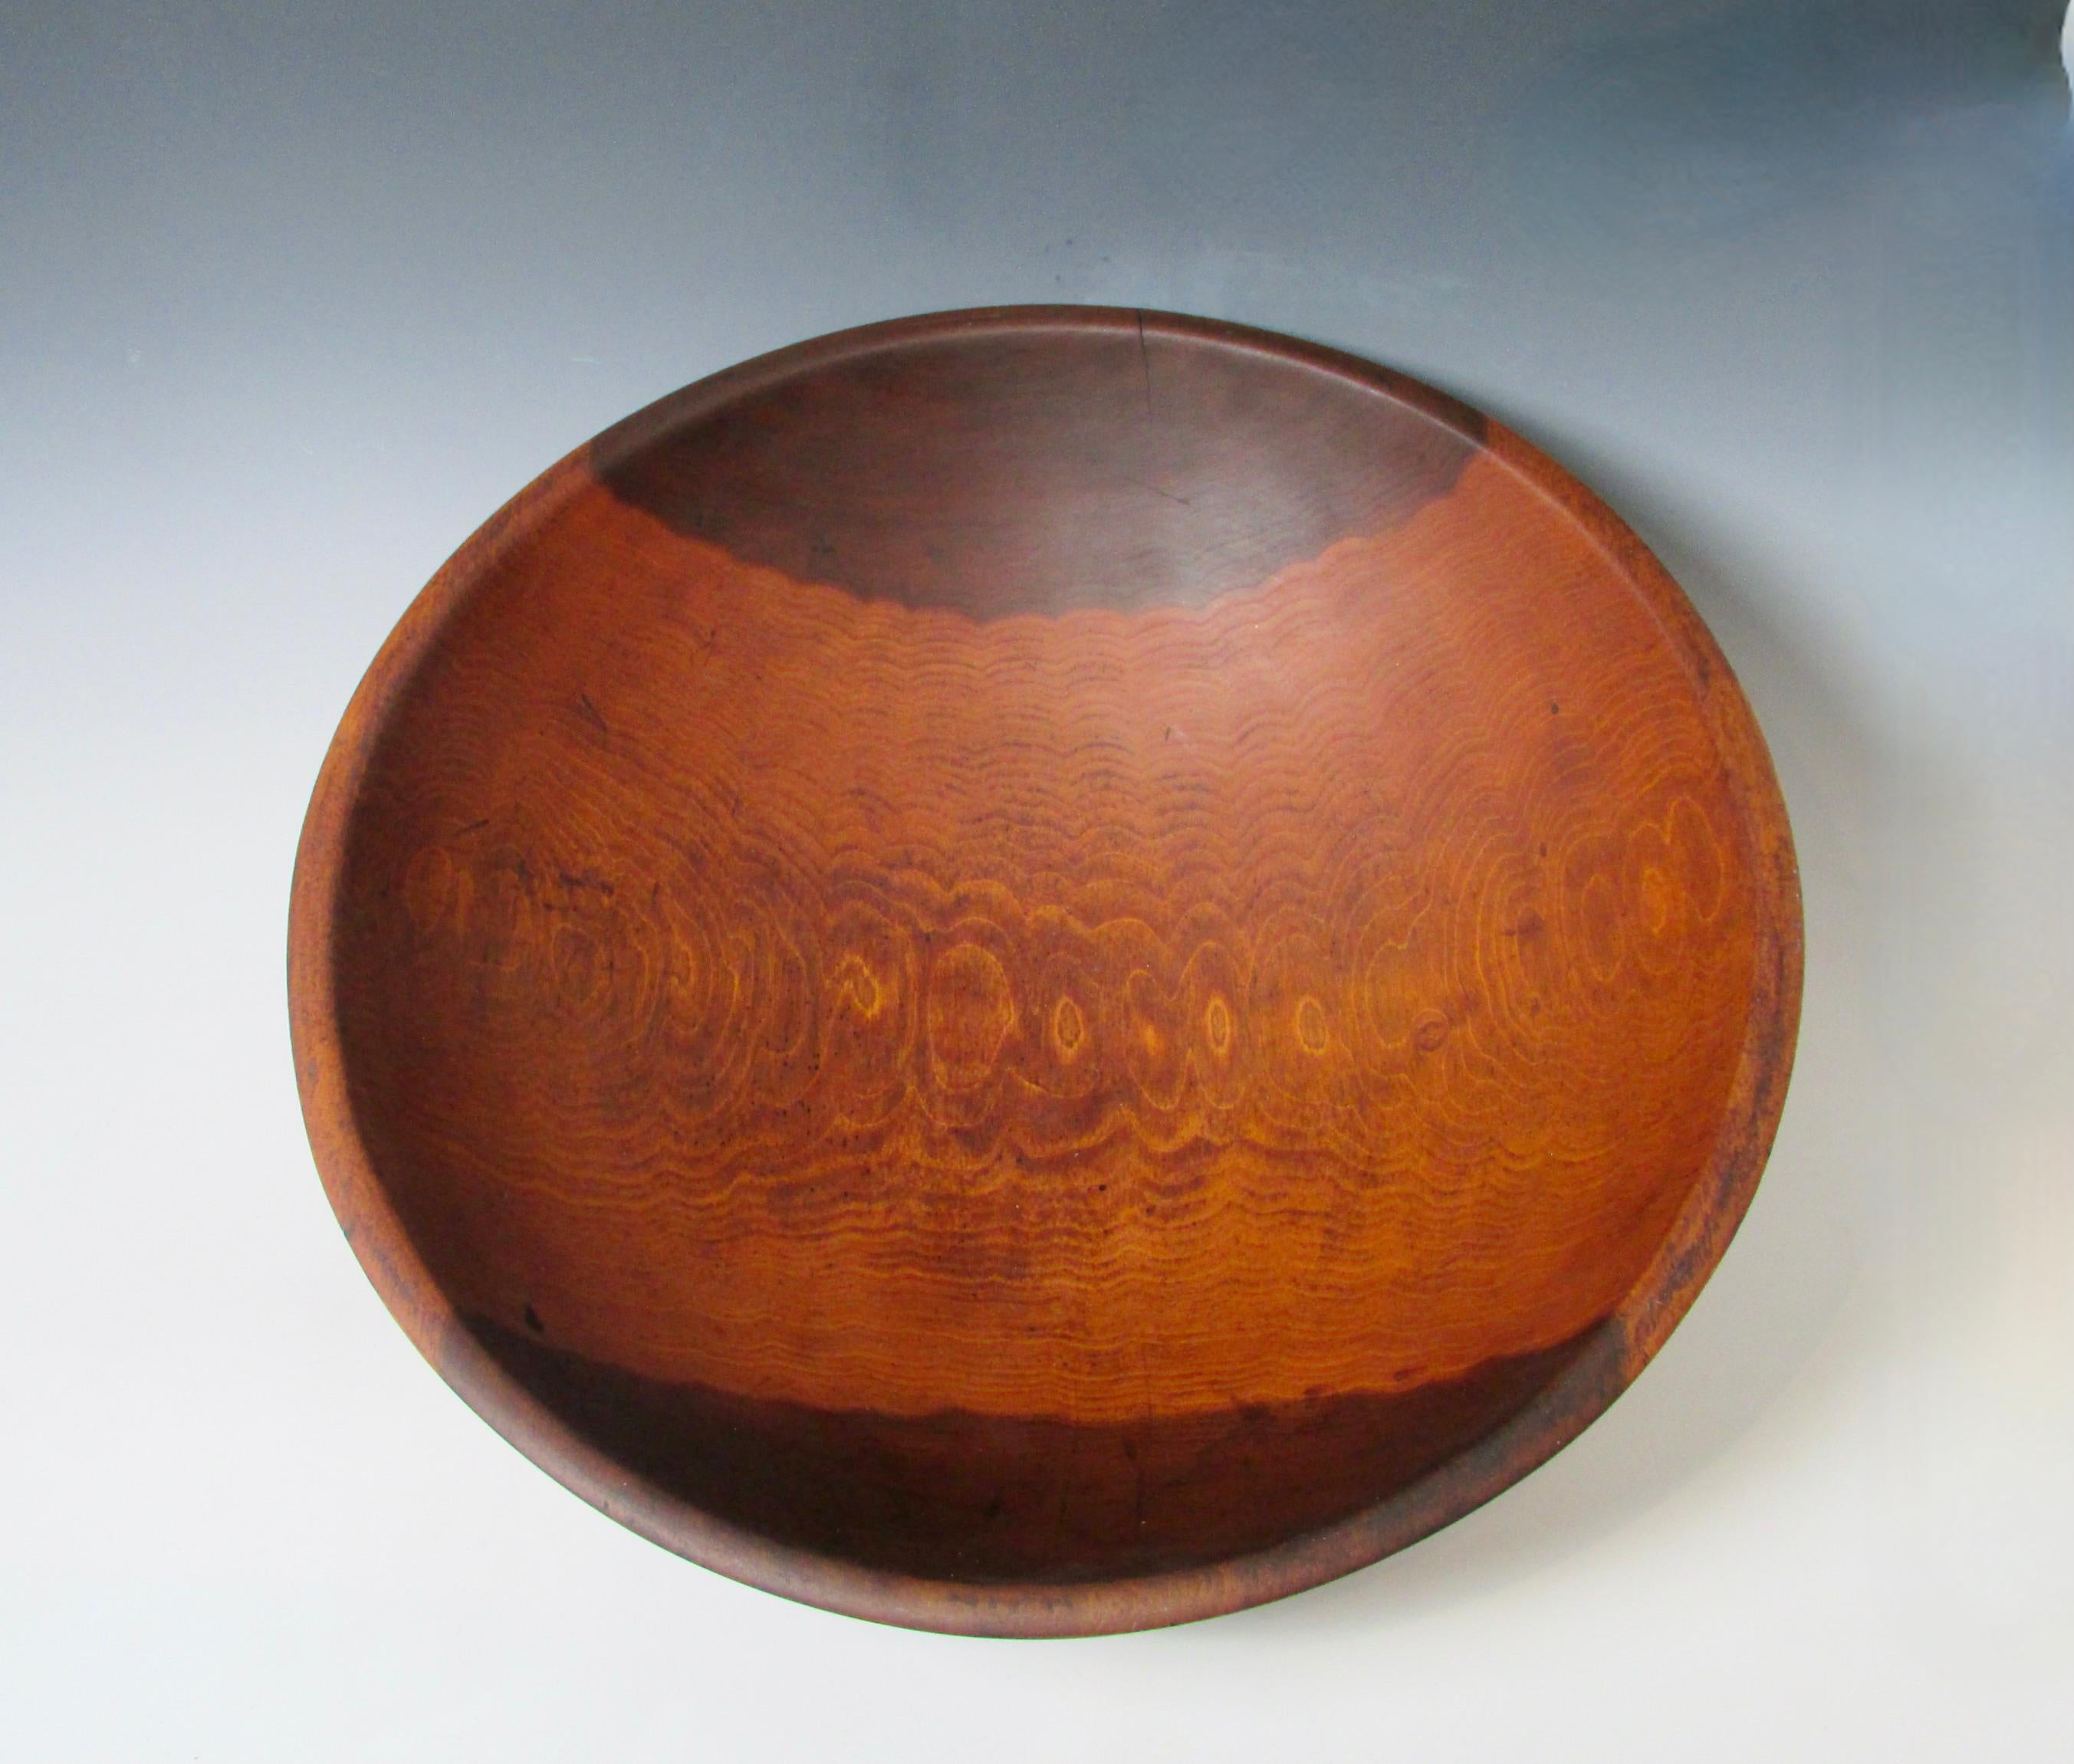 munising wooden bowl